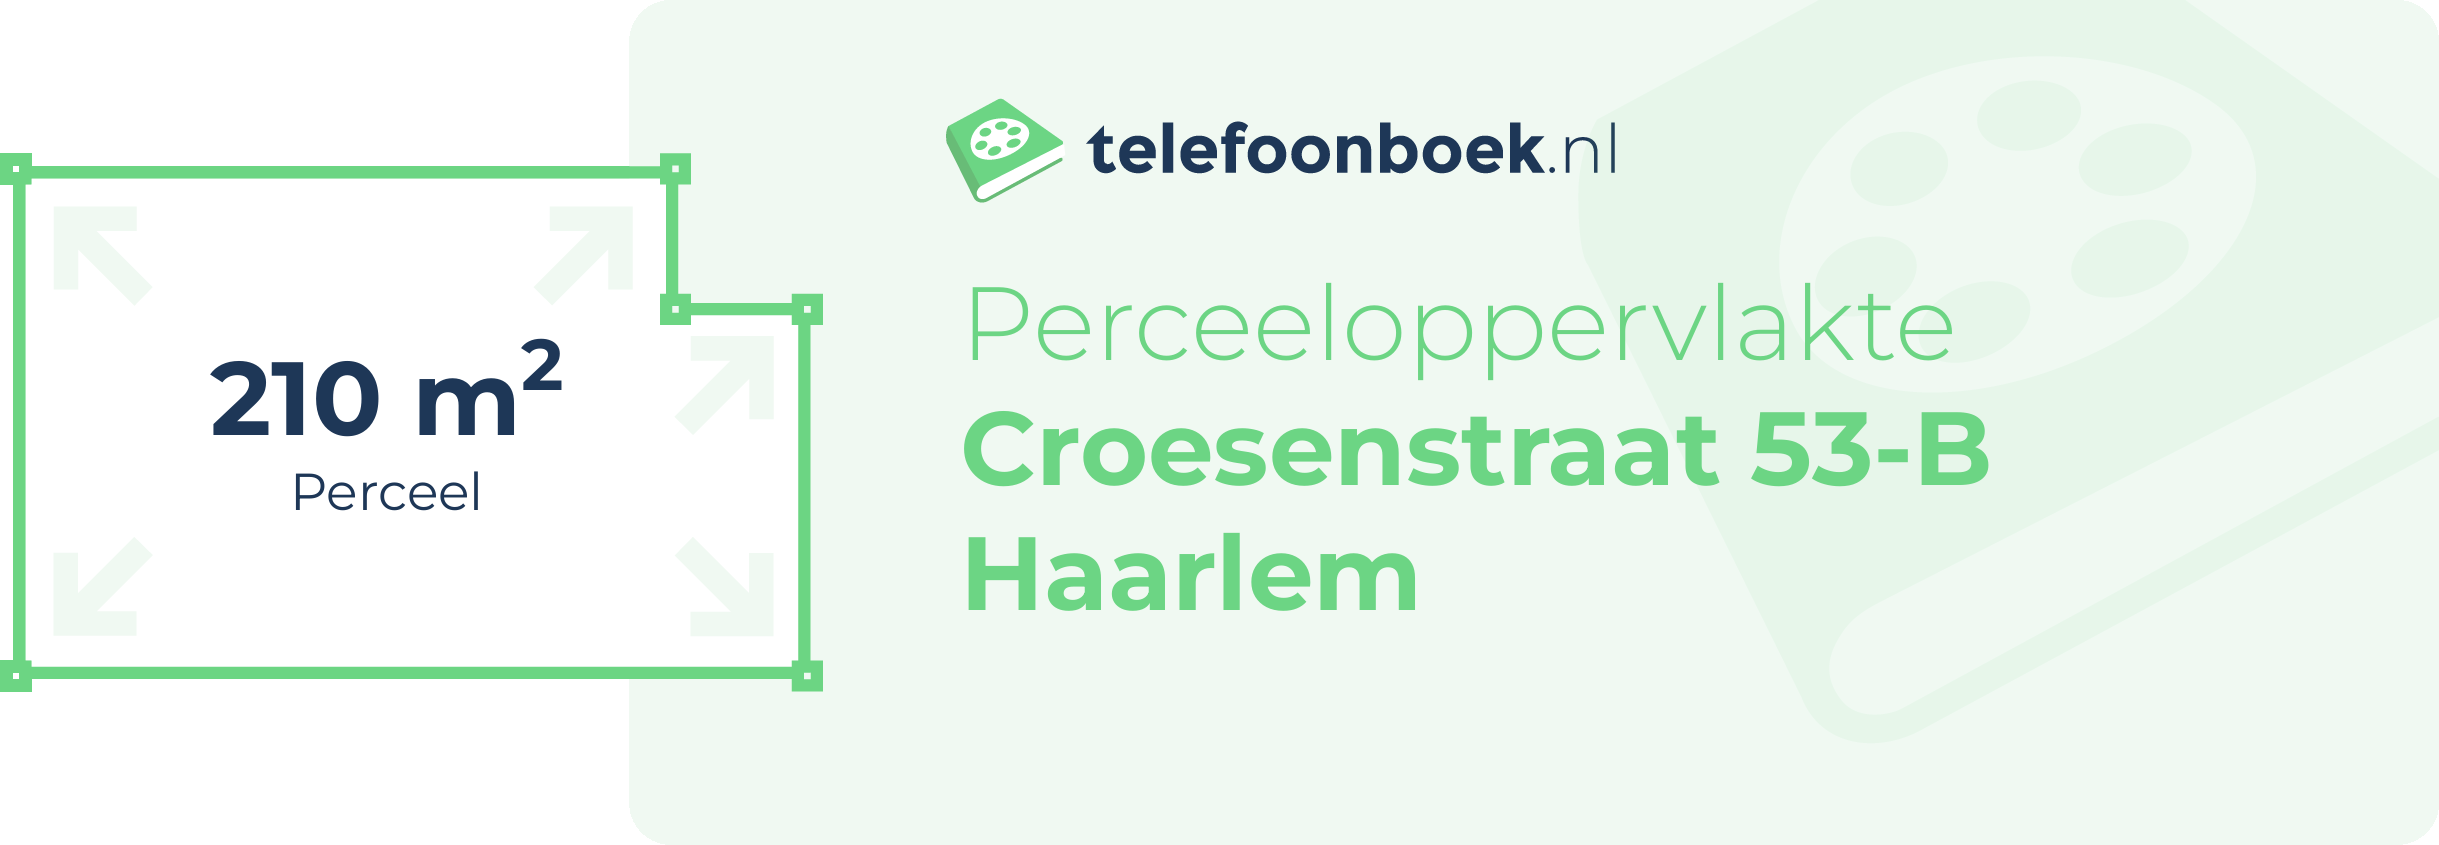 Perceeloppervlakte Croesenstraat 53-B Haarlem